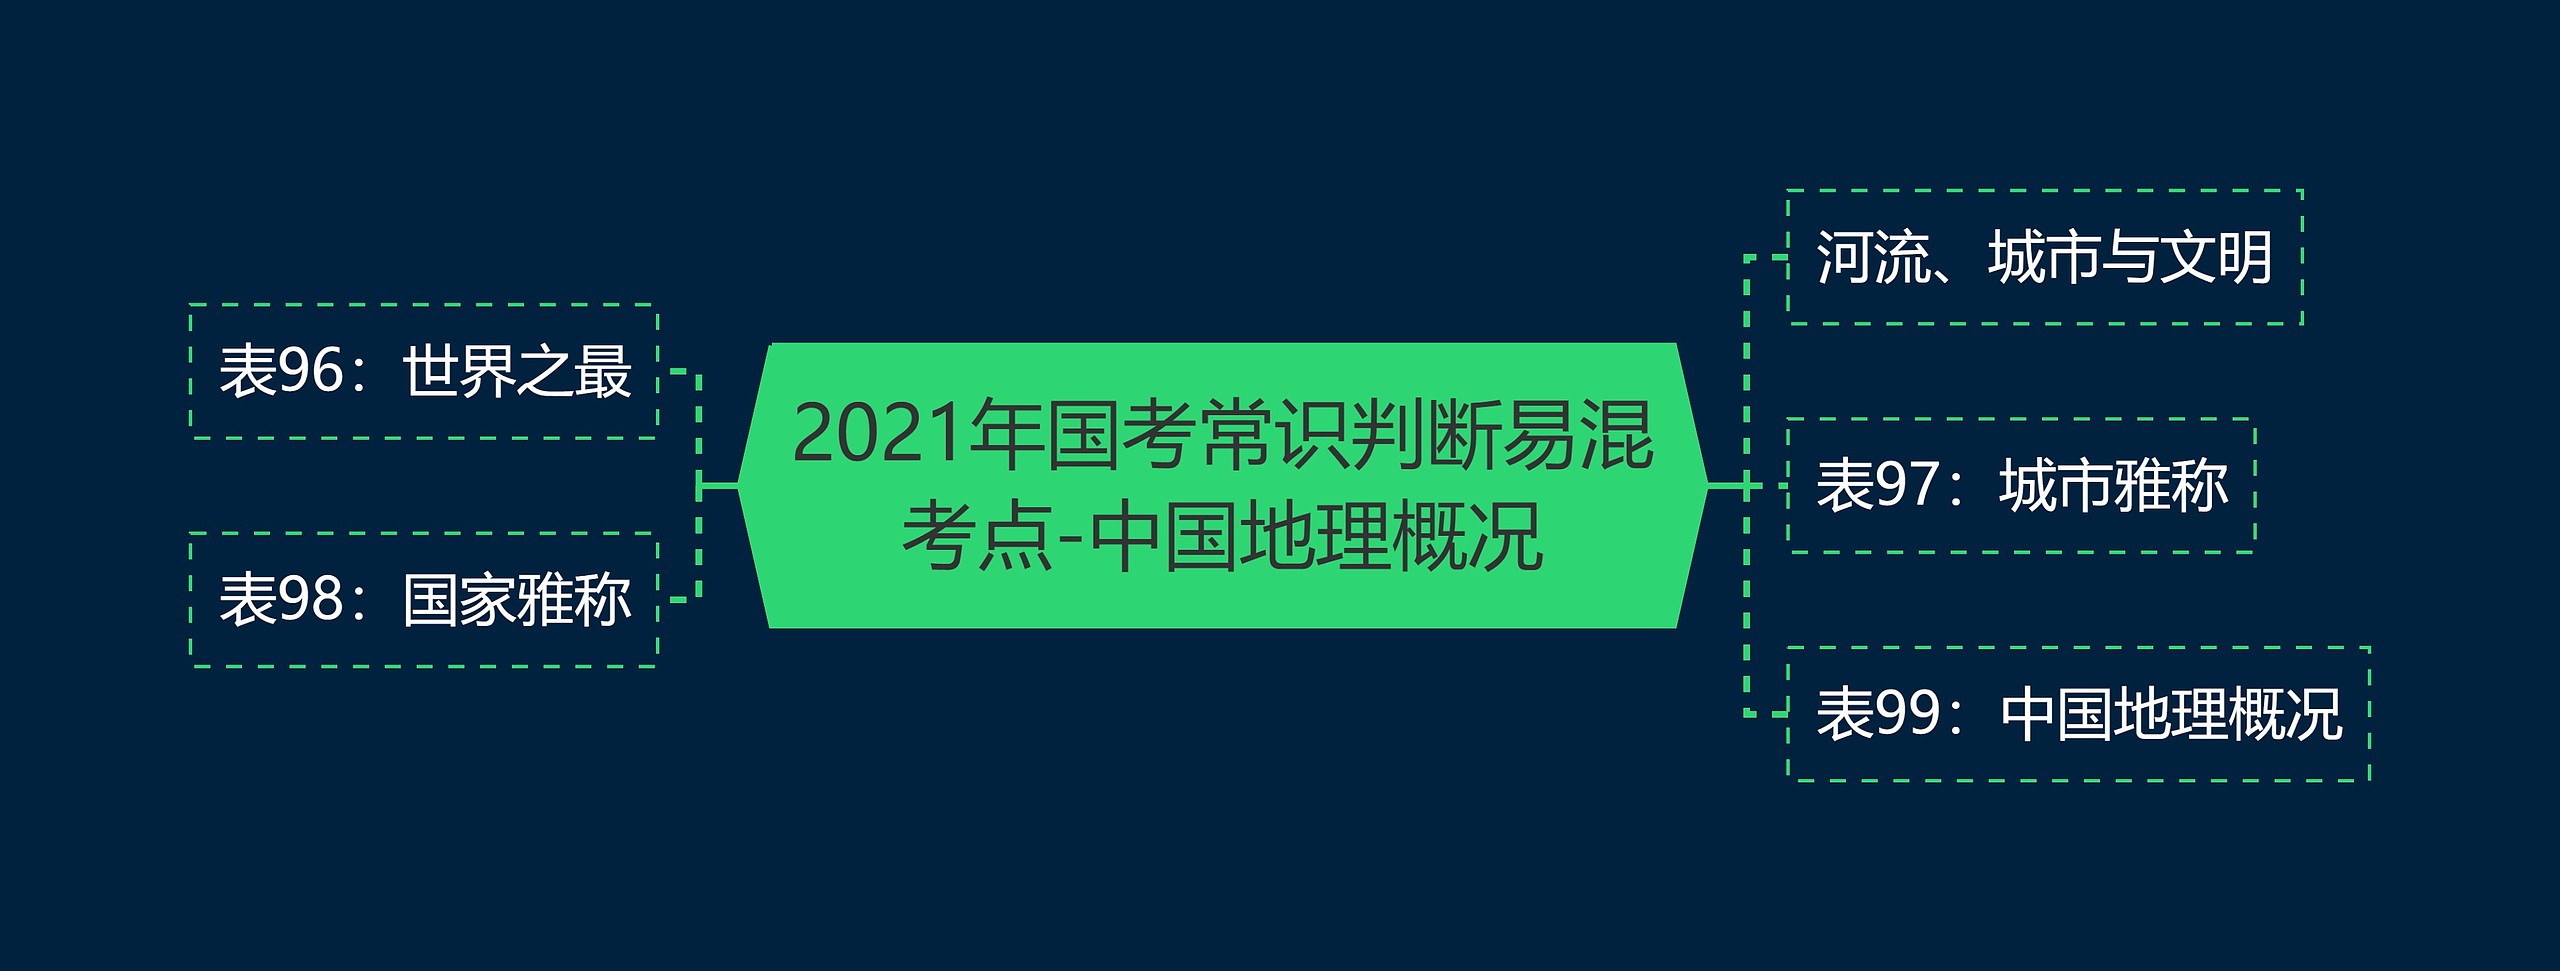 2021年国考常识判断易混考点-中国地理概况